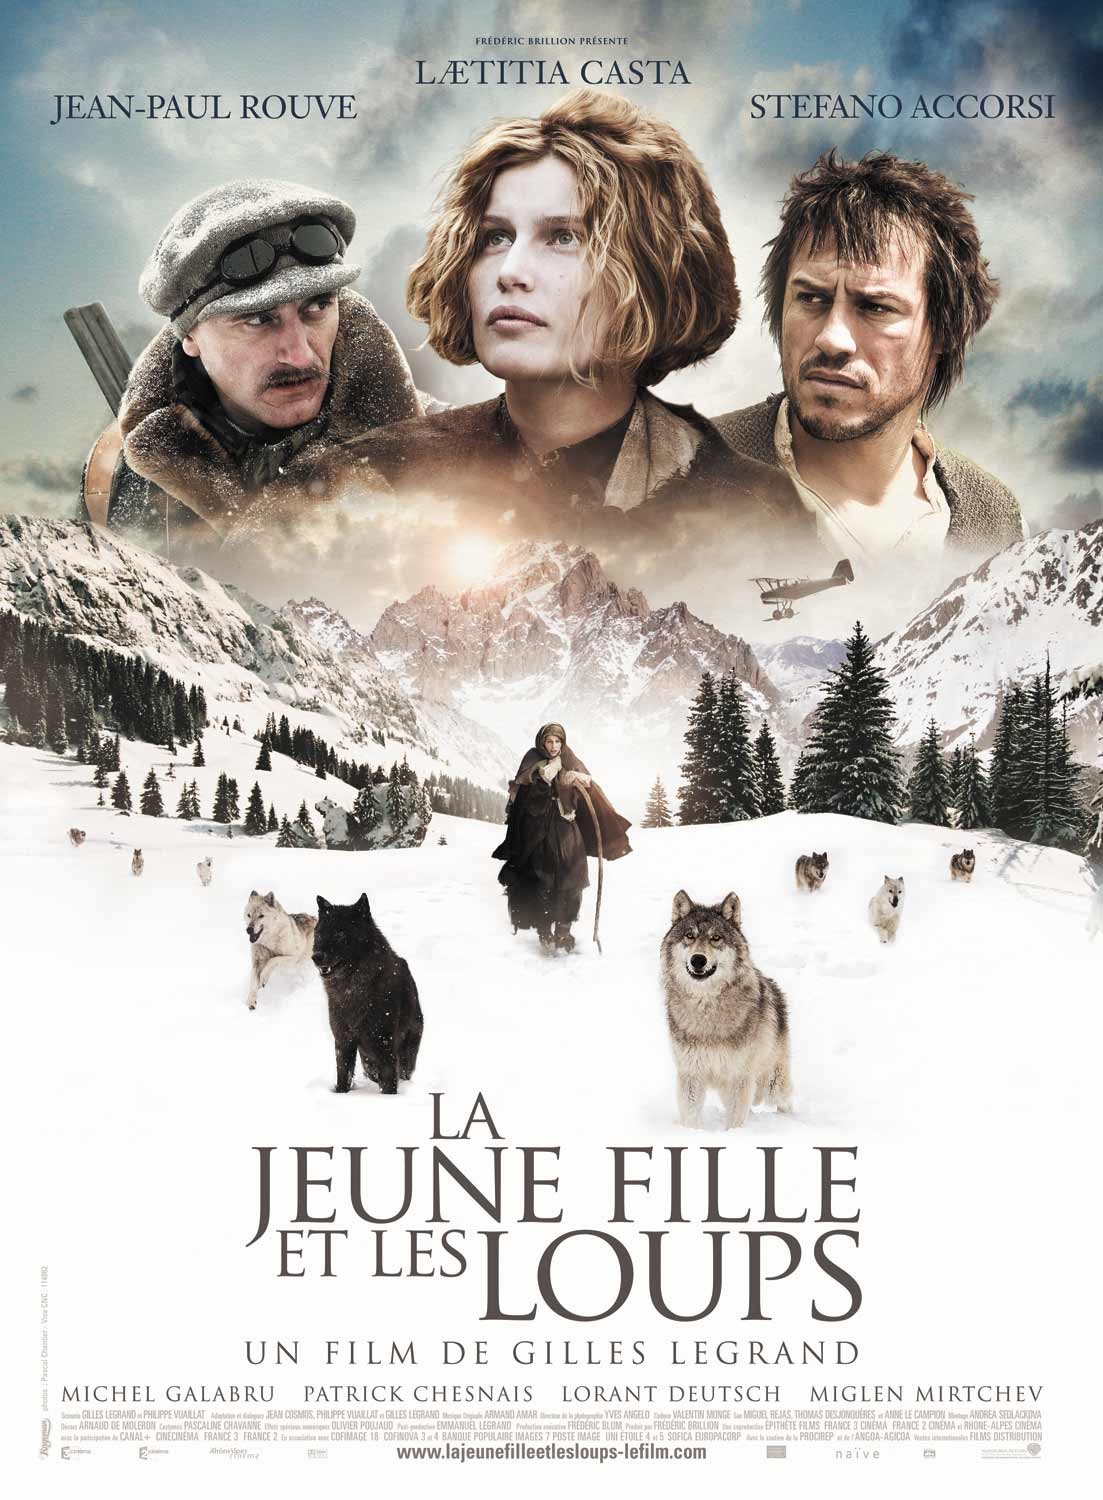 Extra Large Movie Poster Image for La jeune fille et les loups 